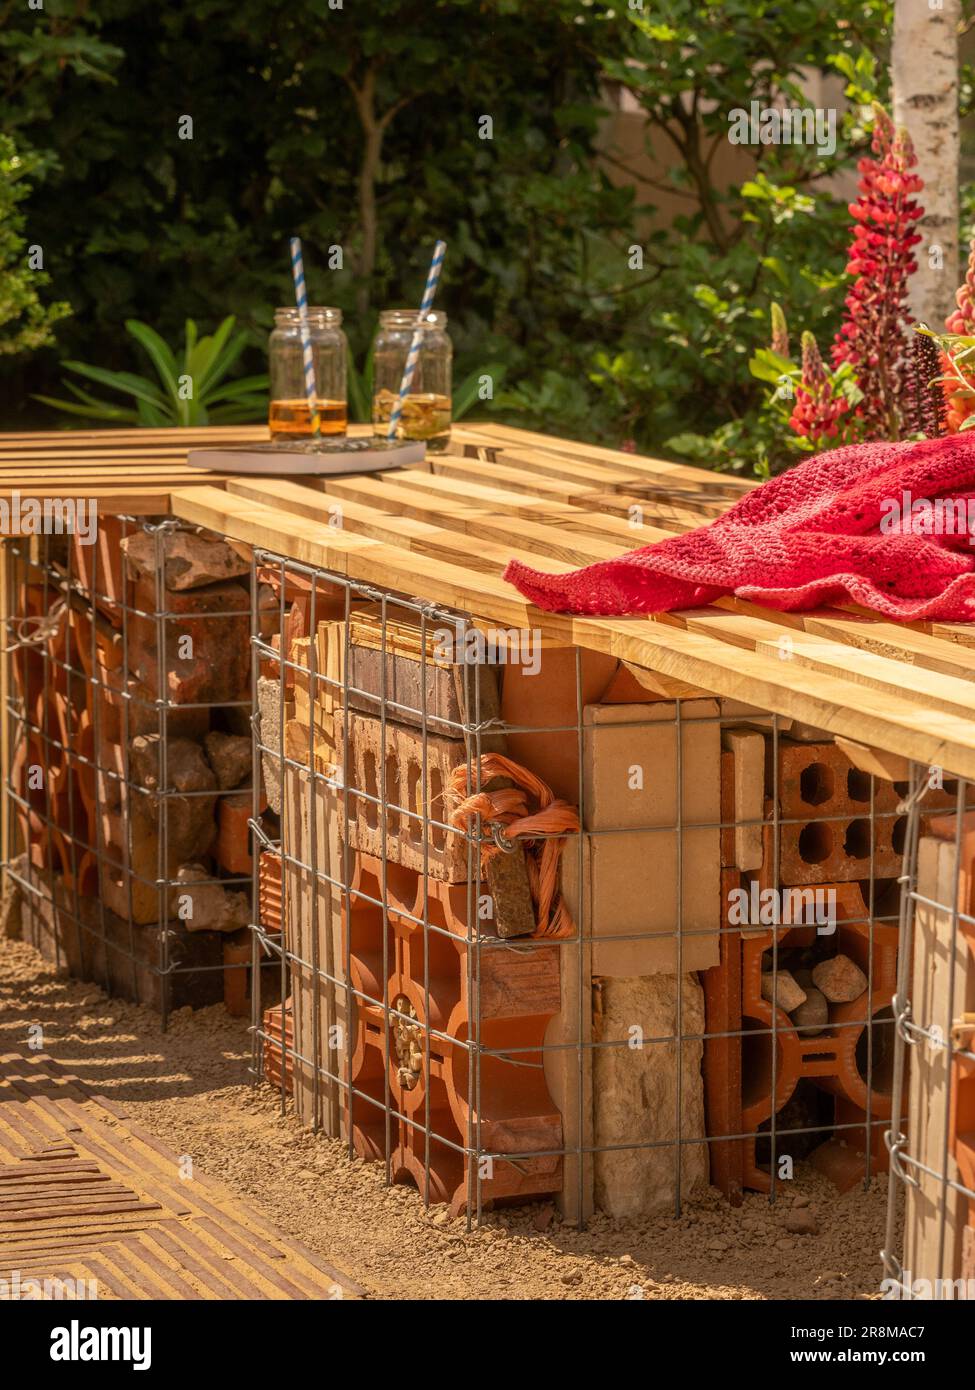 Banc de jardin à lattes en bois soutenu par des gabions en fil de fer remplis de briques dans un jardin d'exposition au Royaume-Uni exposition de jardin. Banque D'Images